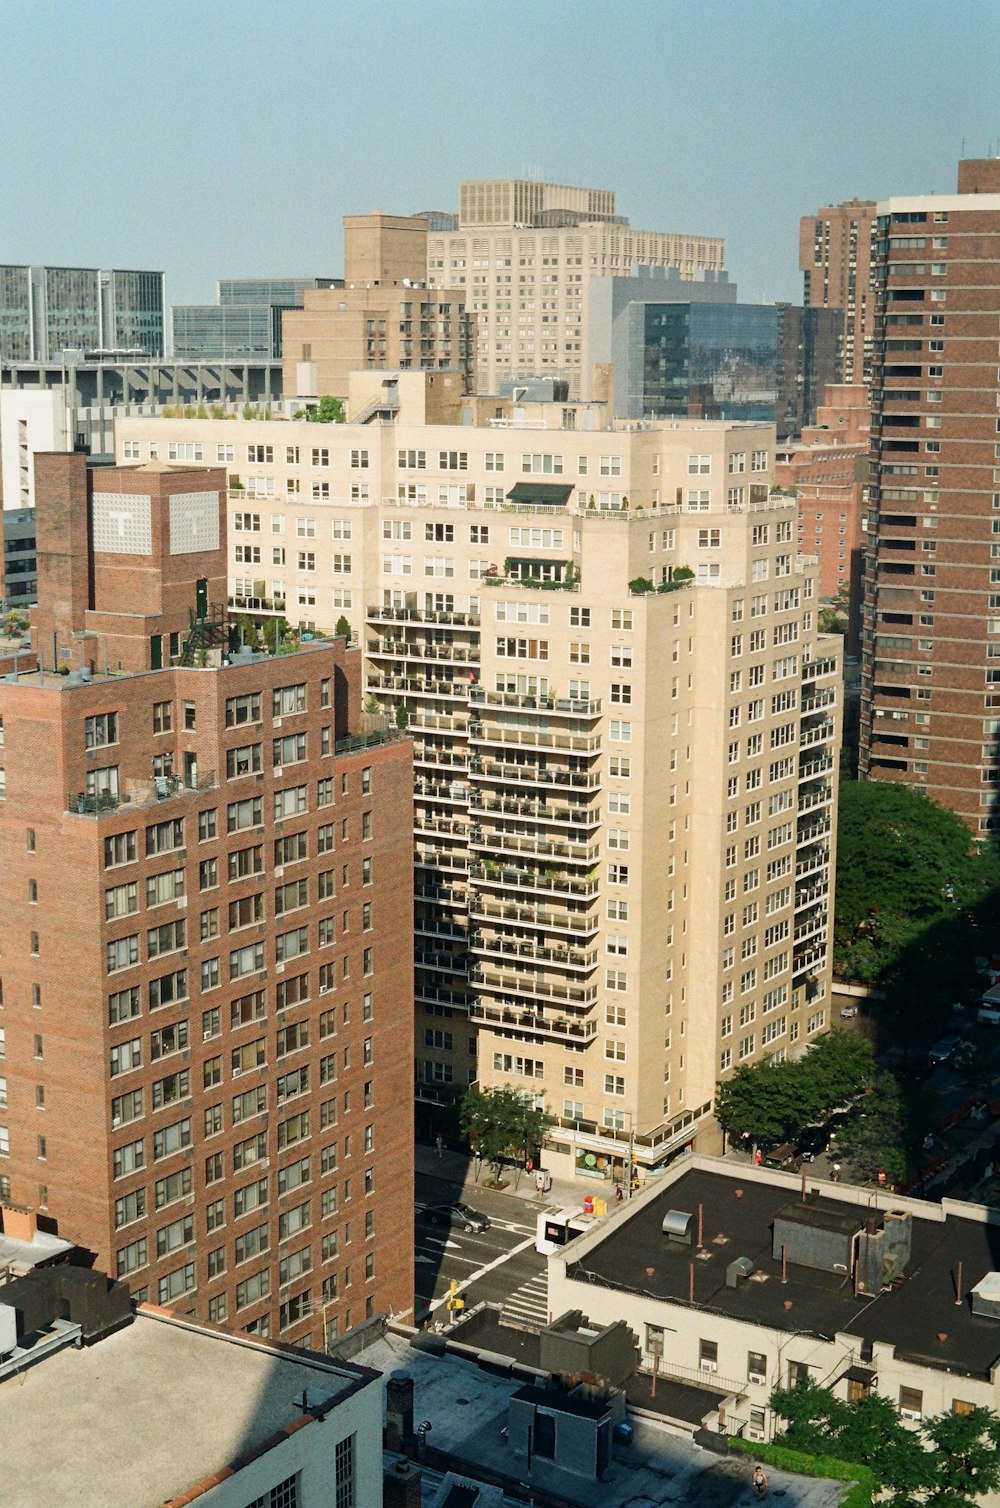 Fotografía aérea de la ciudad con edificios de gran altura durante el día